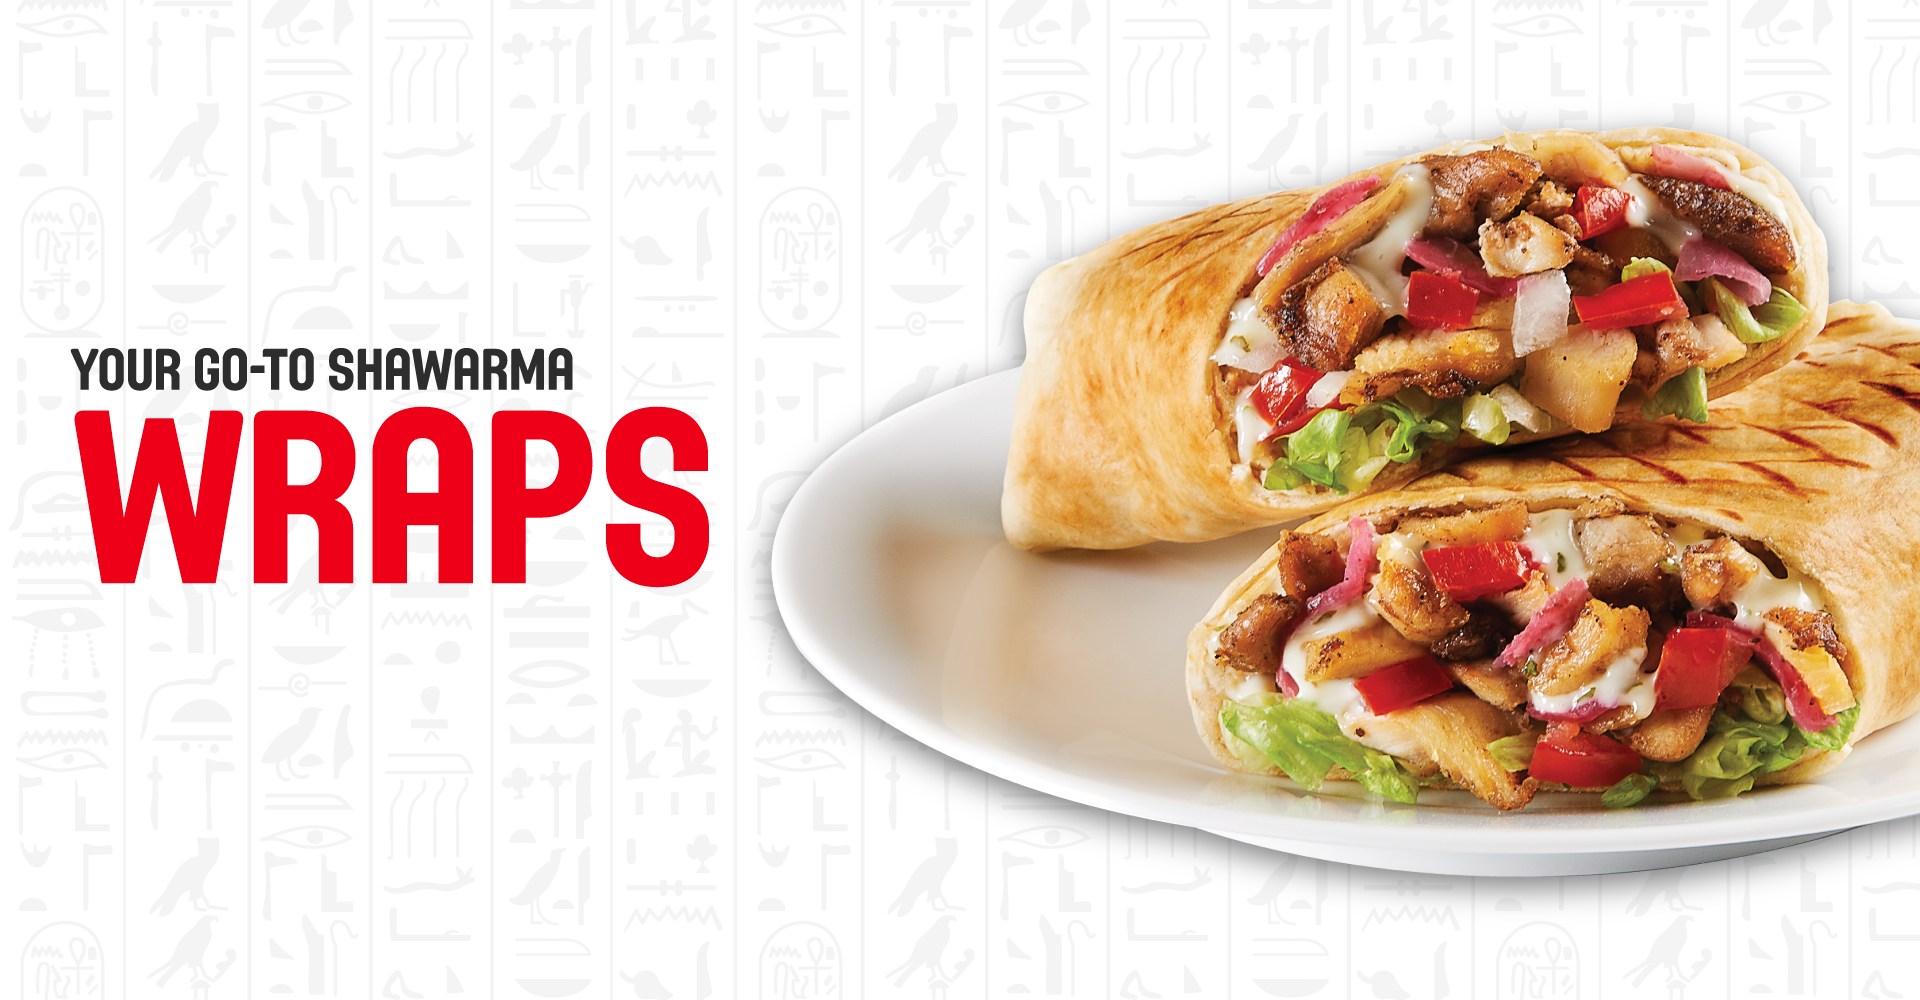 Your go to shawarma - Wraps